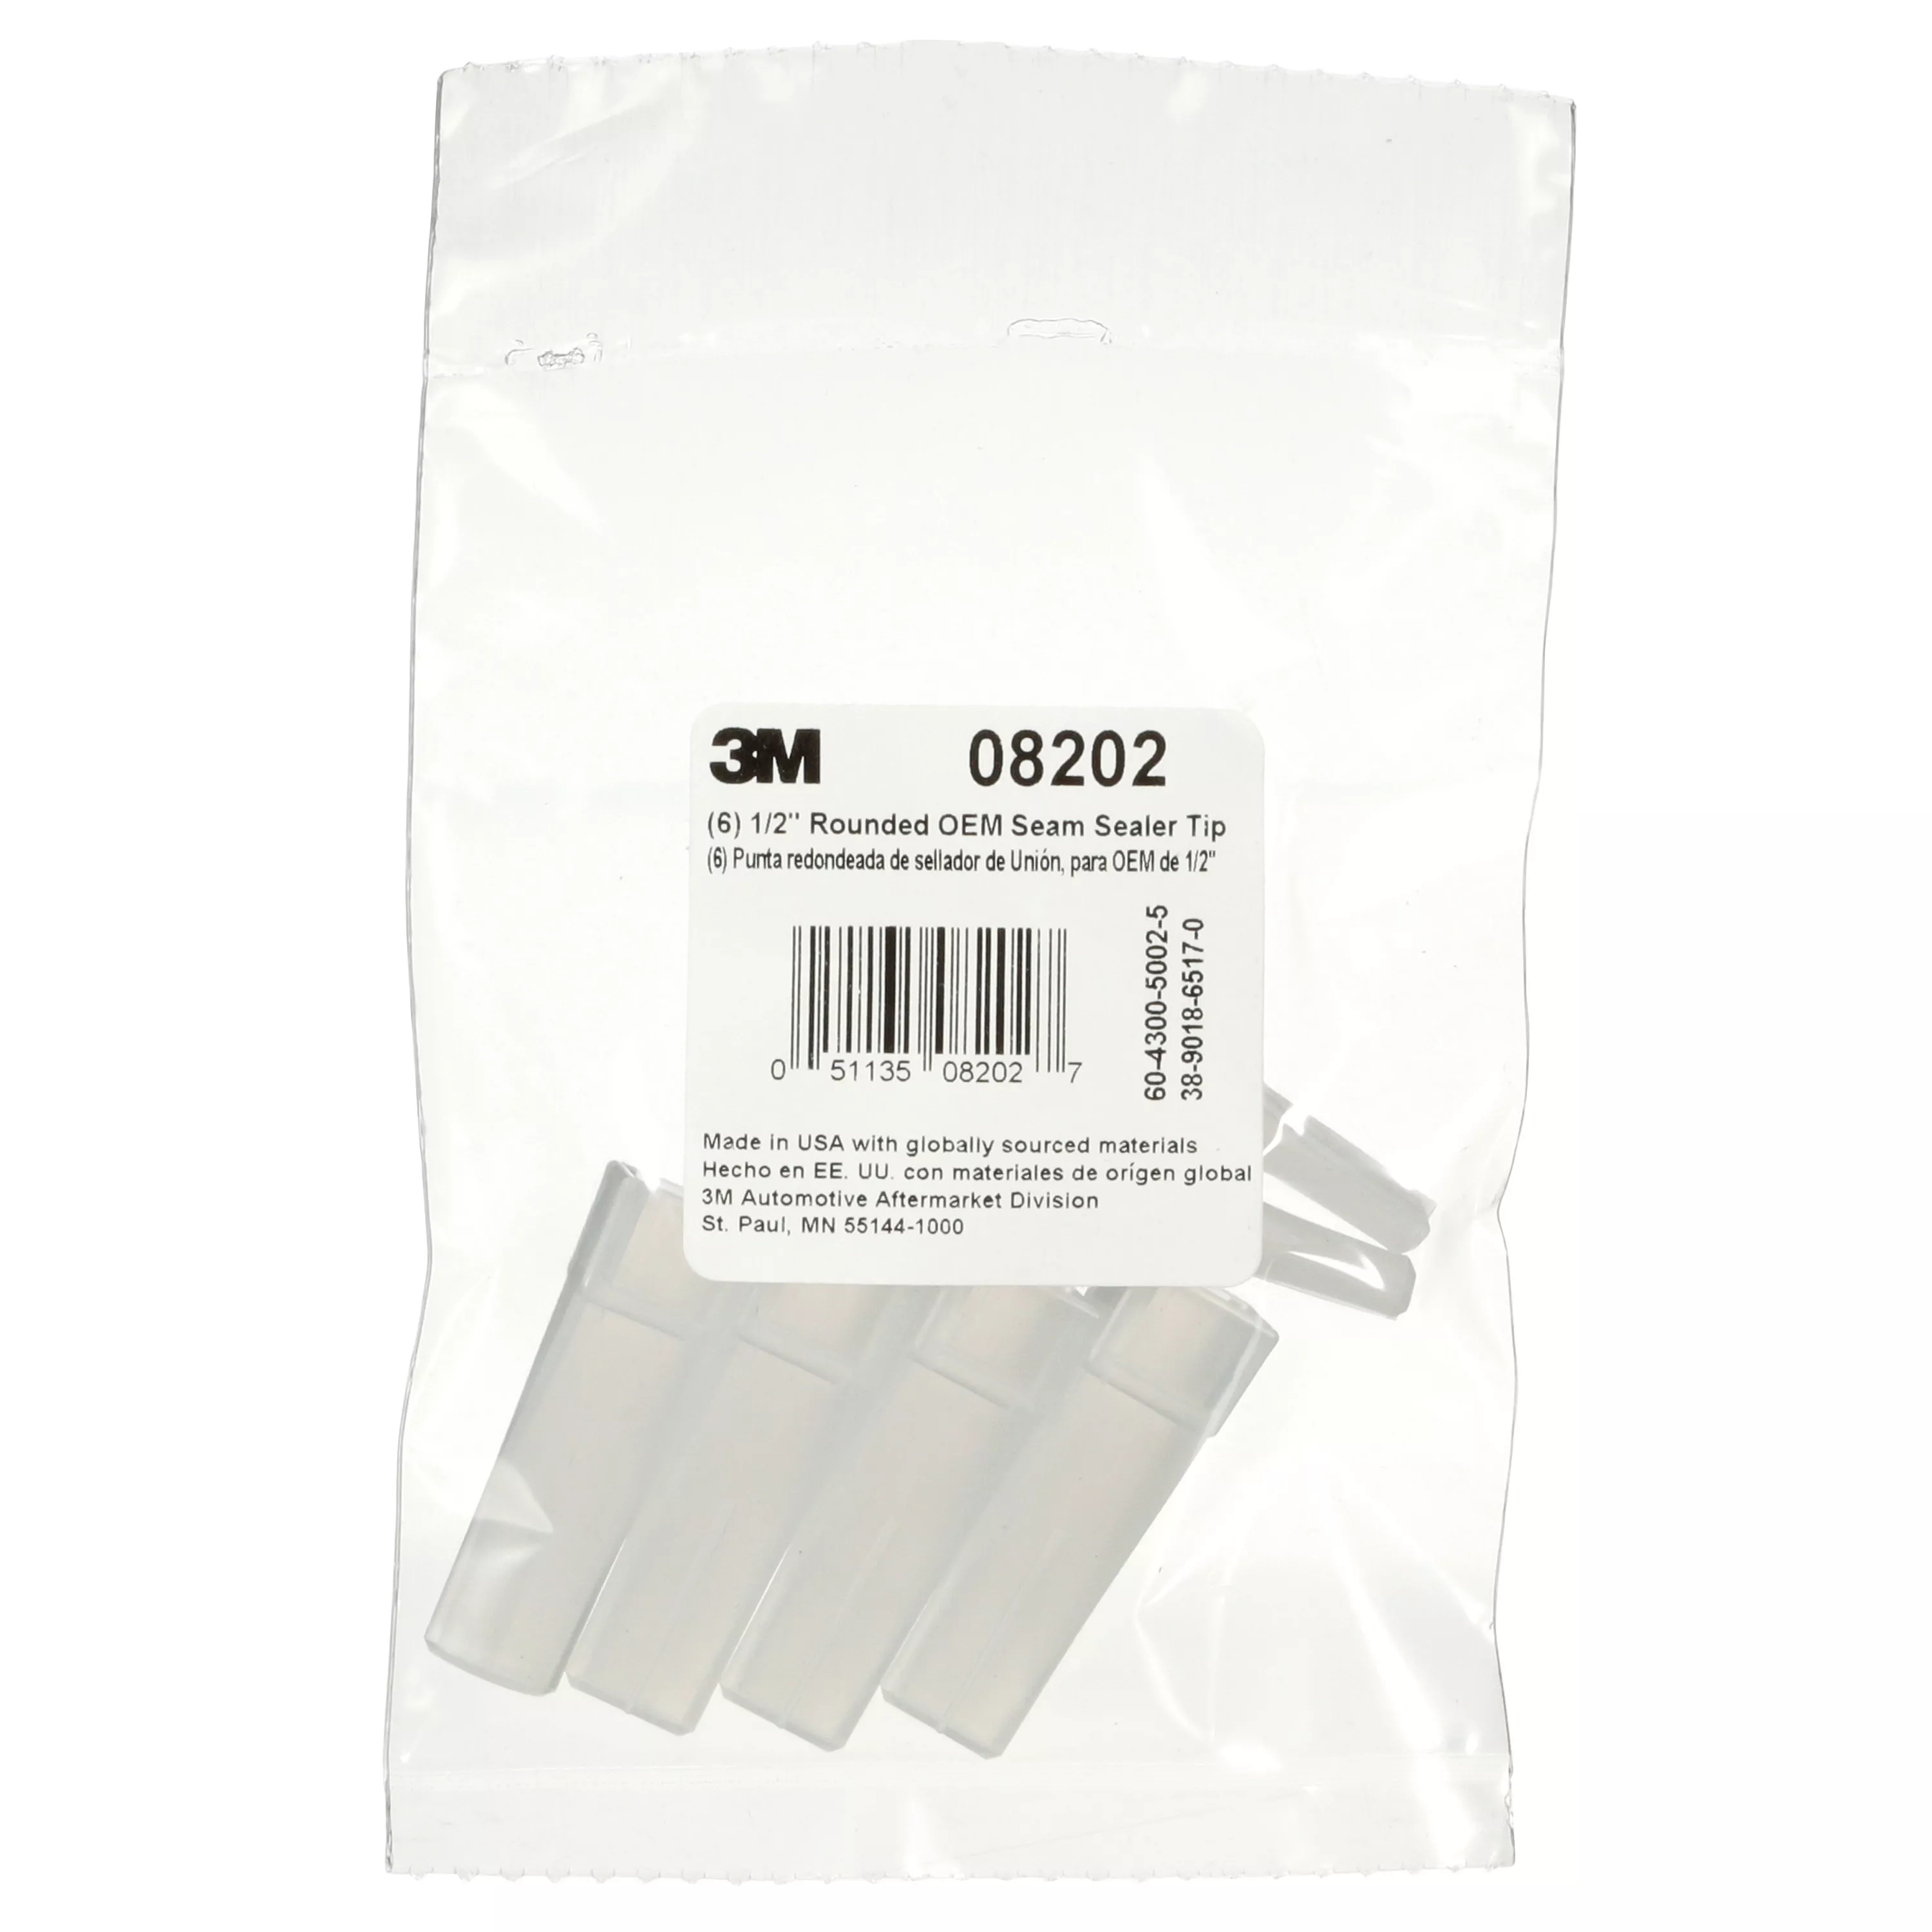 3M™ OEM Seam Sealer Tip, 08202, 3/8 in, Rounded, 6 per bag, 6 bags per
case